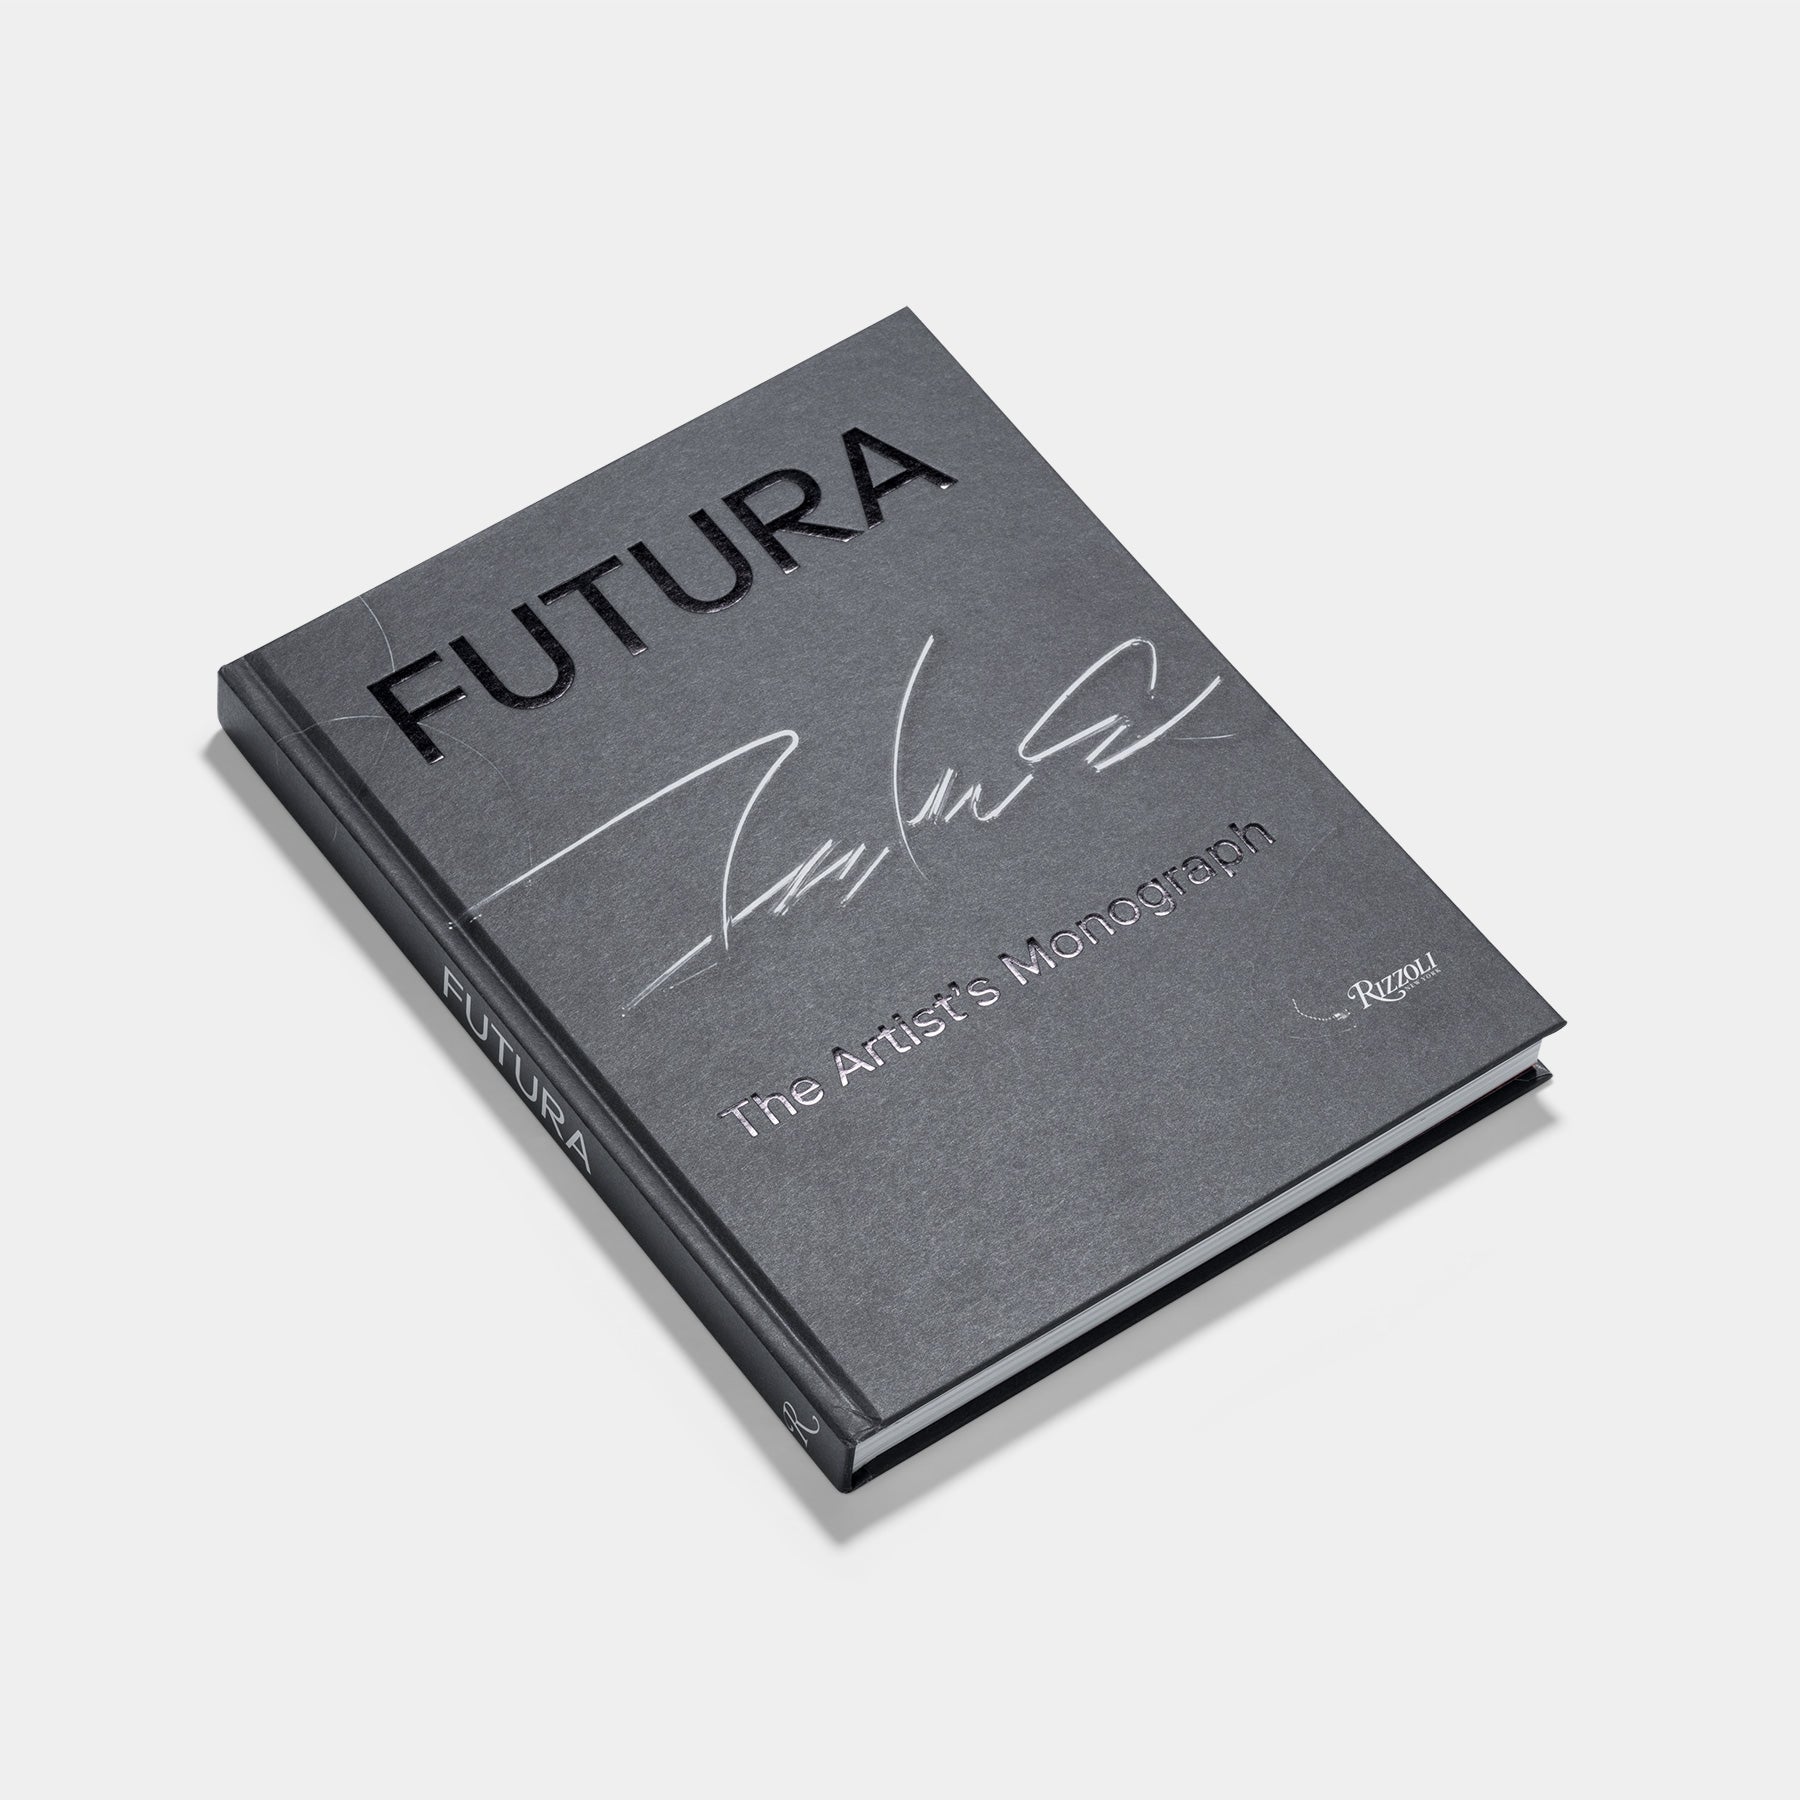 Futura: The Artist's Monograph